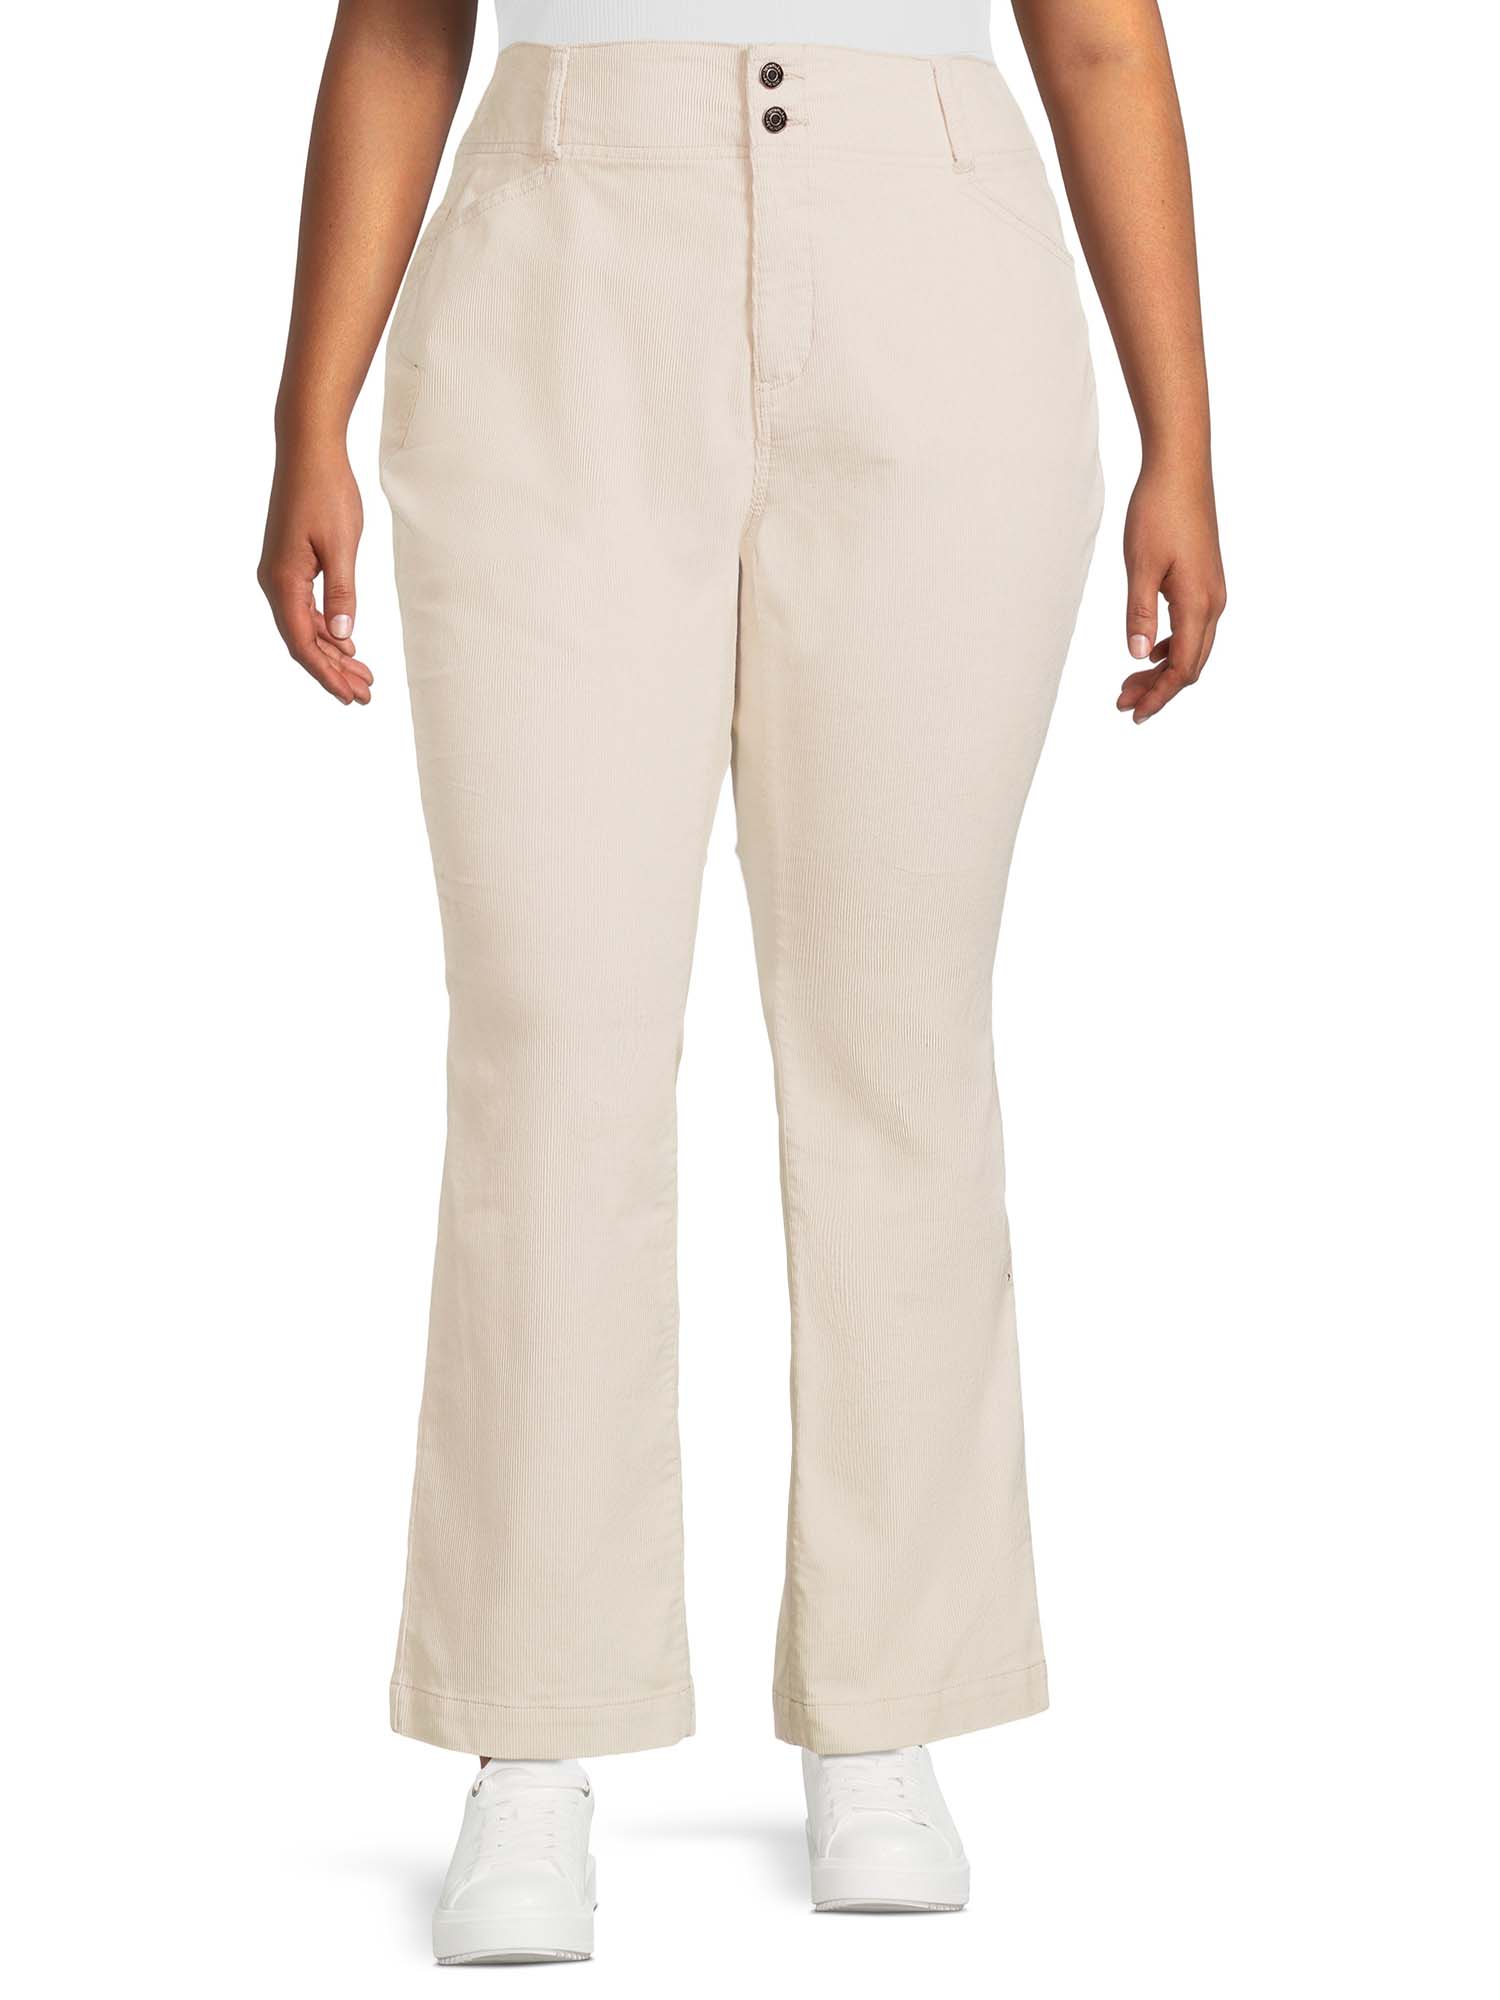 Terra & Sky Women's Plus Size Corduroy Bootcut Pants, 31